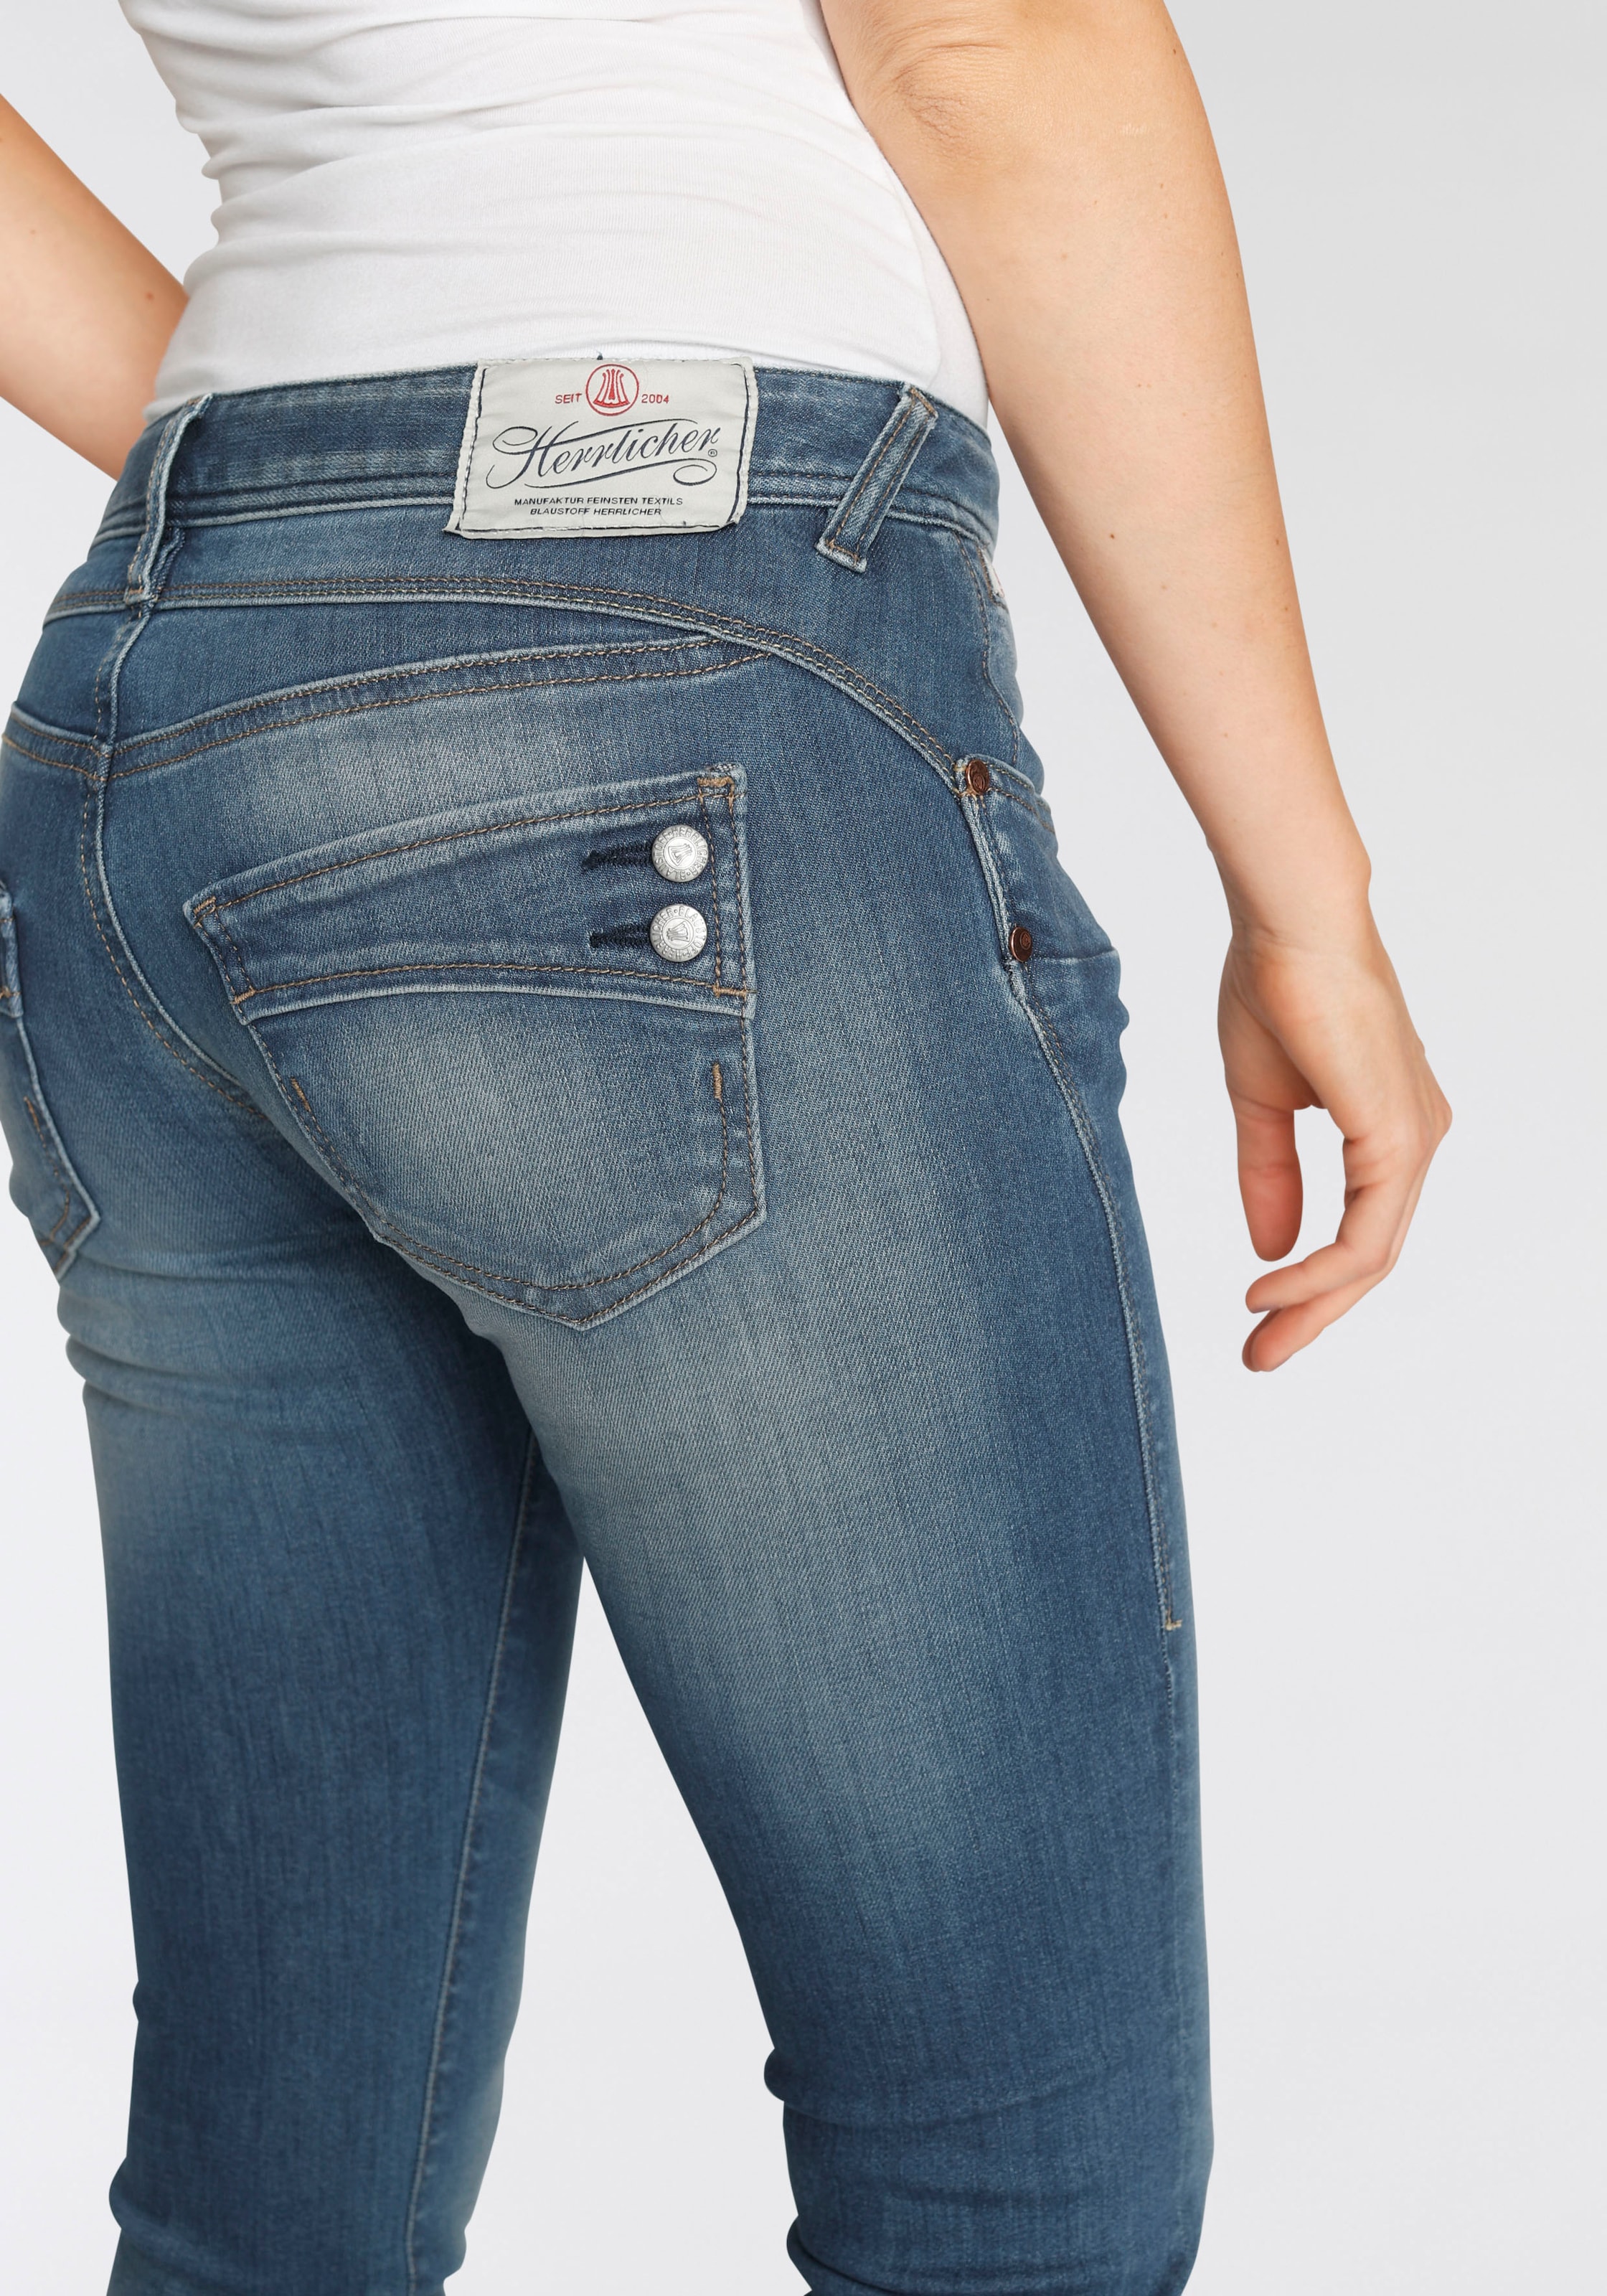 »PIPER Kitotex sur Slim-fit-Jeans dank Herrlicher SLIM Découvrir ORGANIC«, Technology umweltfreundlich